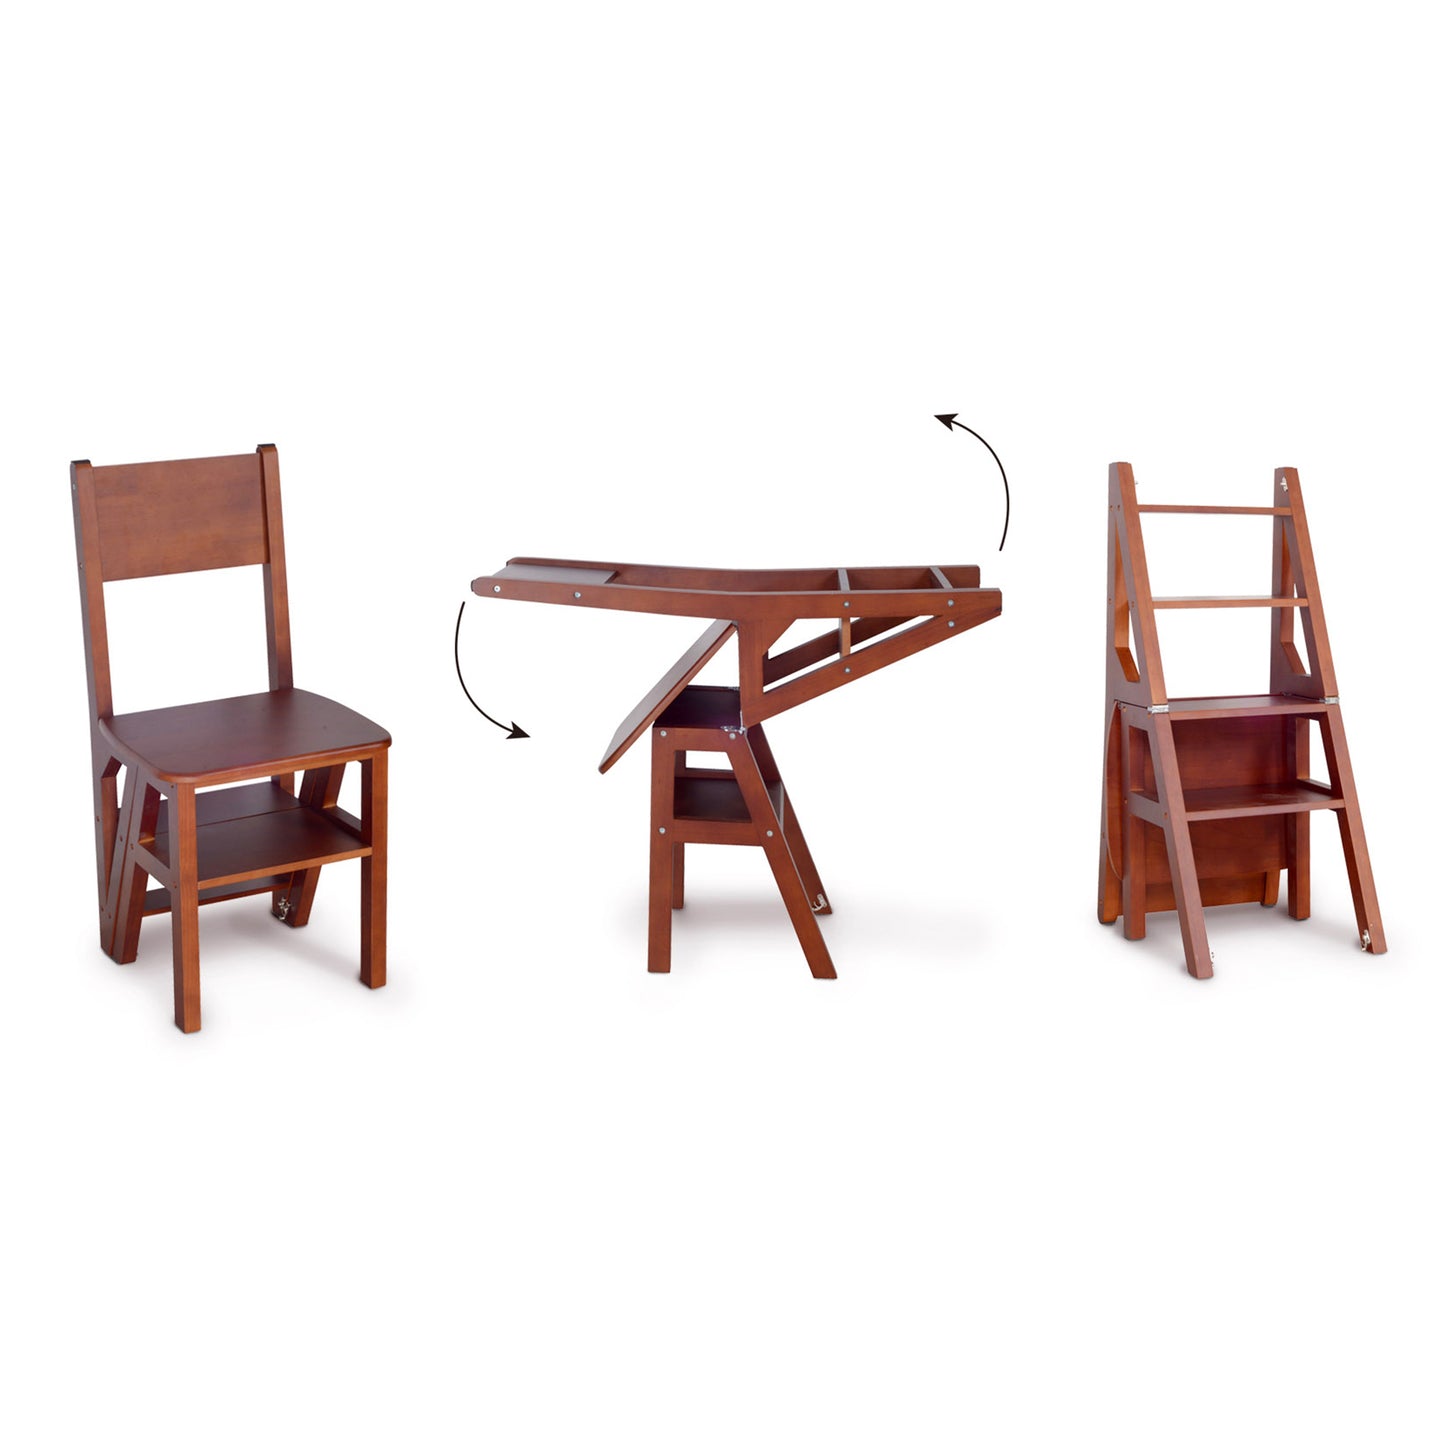 Finition marron, chaise à échelle pliante en bois massif, tabouret pliant multifonction en bois pour la maison, la cuisine, la bibliothèque, la chaise à échelle